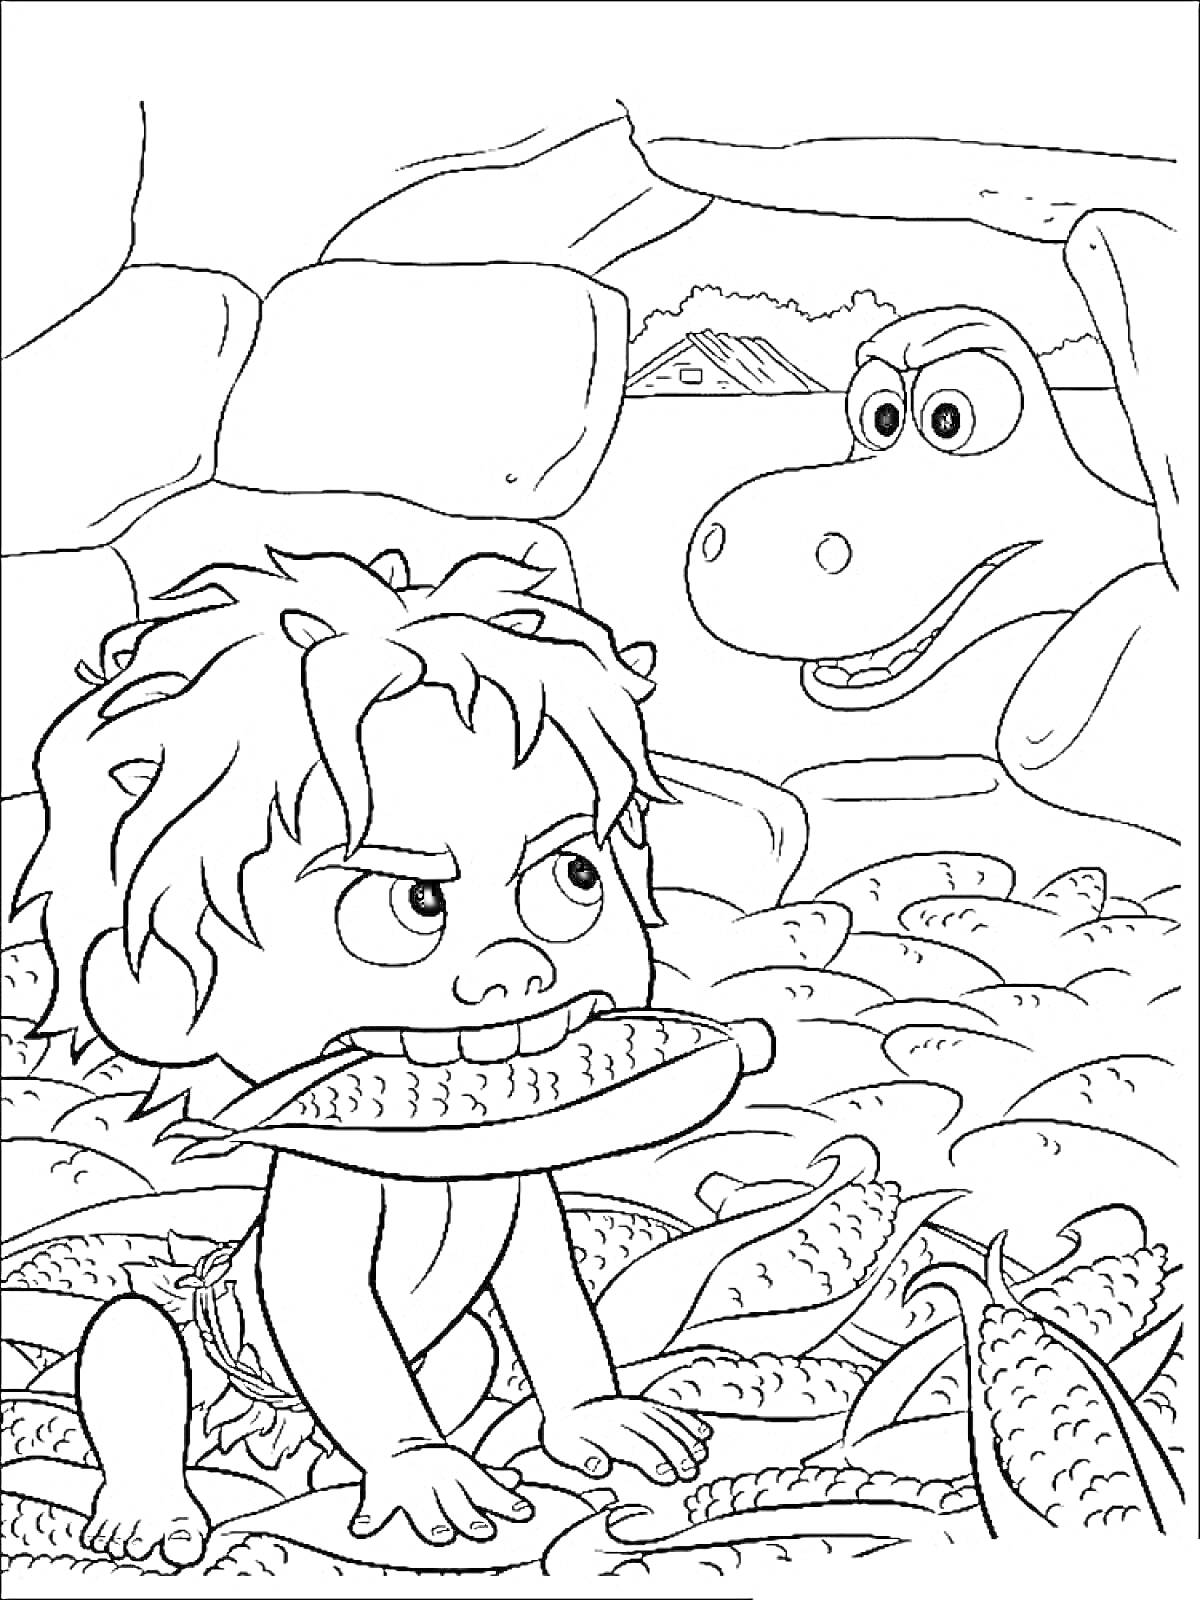 Мальчик с кукурузой и динозавр в пещере